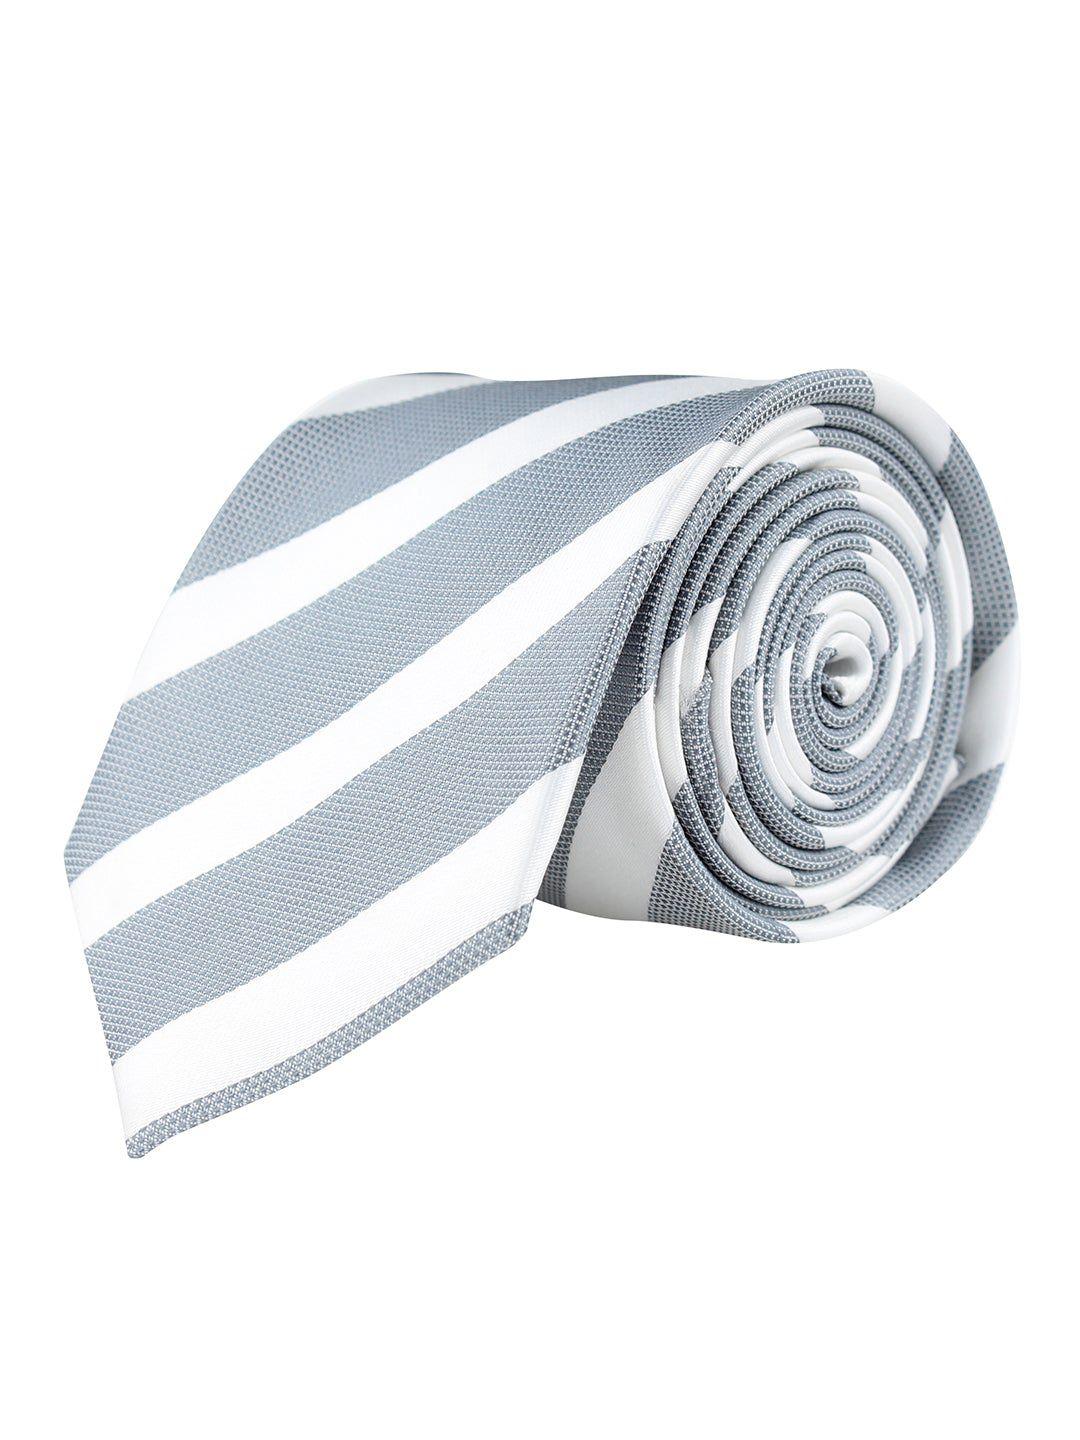 kovove men grey & white striped broad neck tie